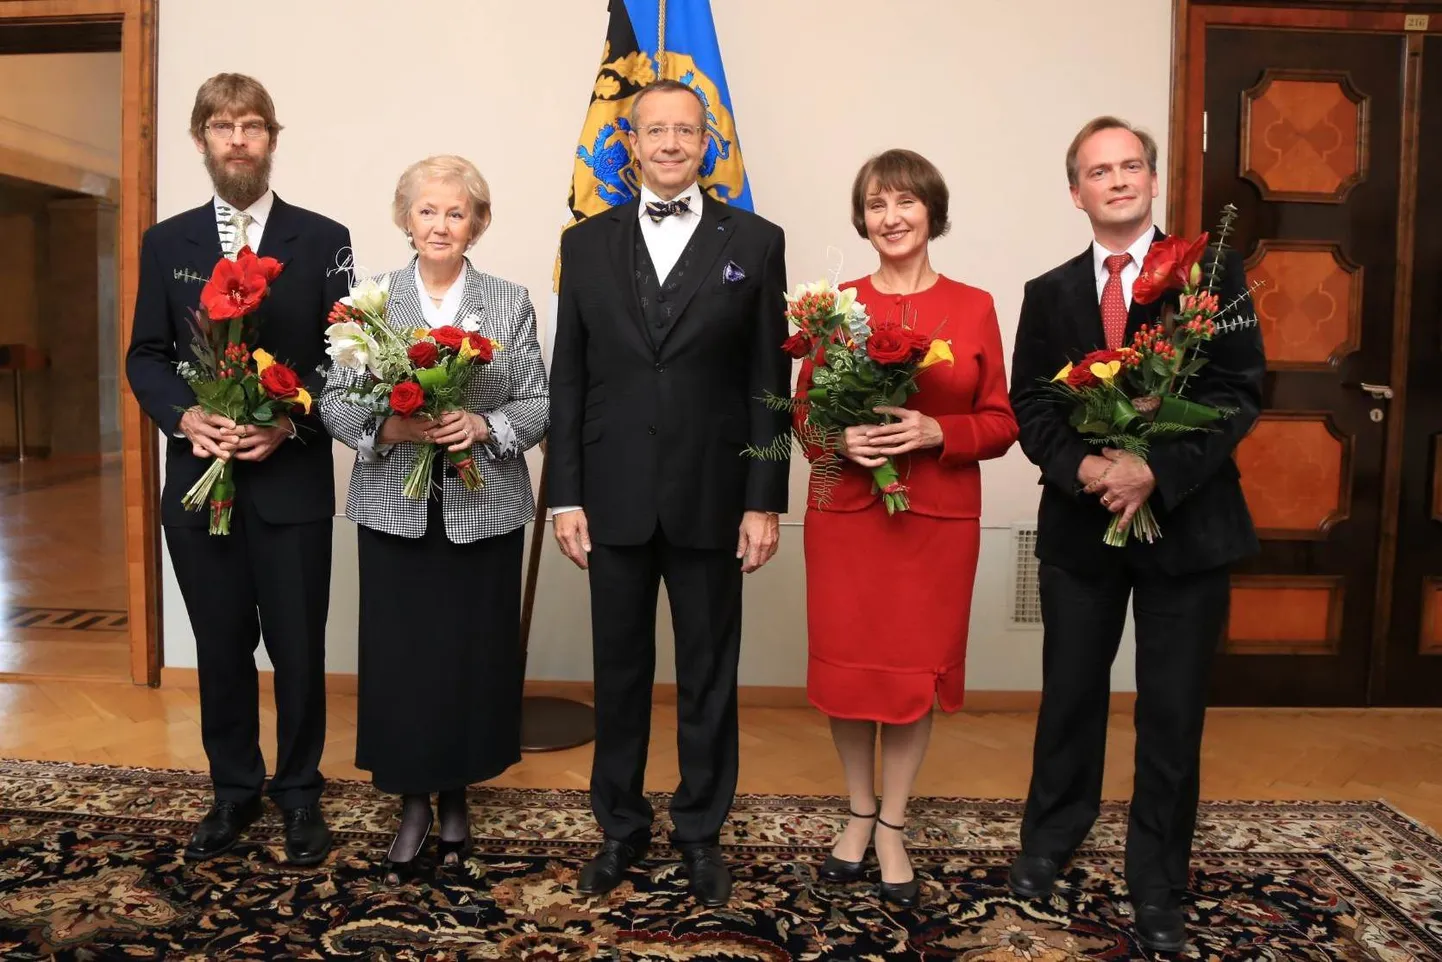 Вручение премий в области образования. На фото(слева): Яан Калда, Тийу Пеяске, президент Тоомас Хендрик Ильвес, Эпп Водья и Март Норма.